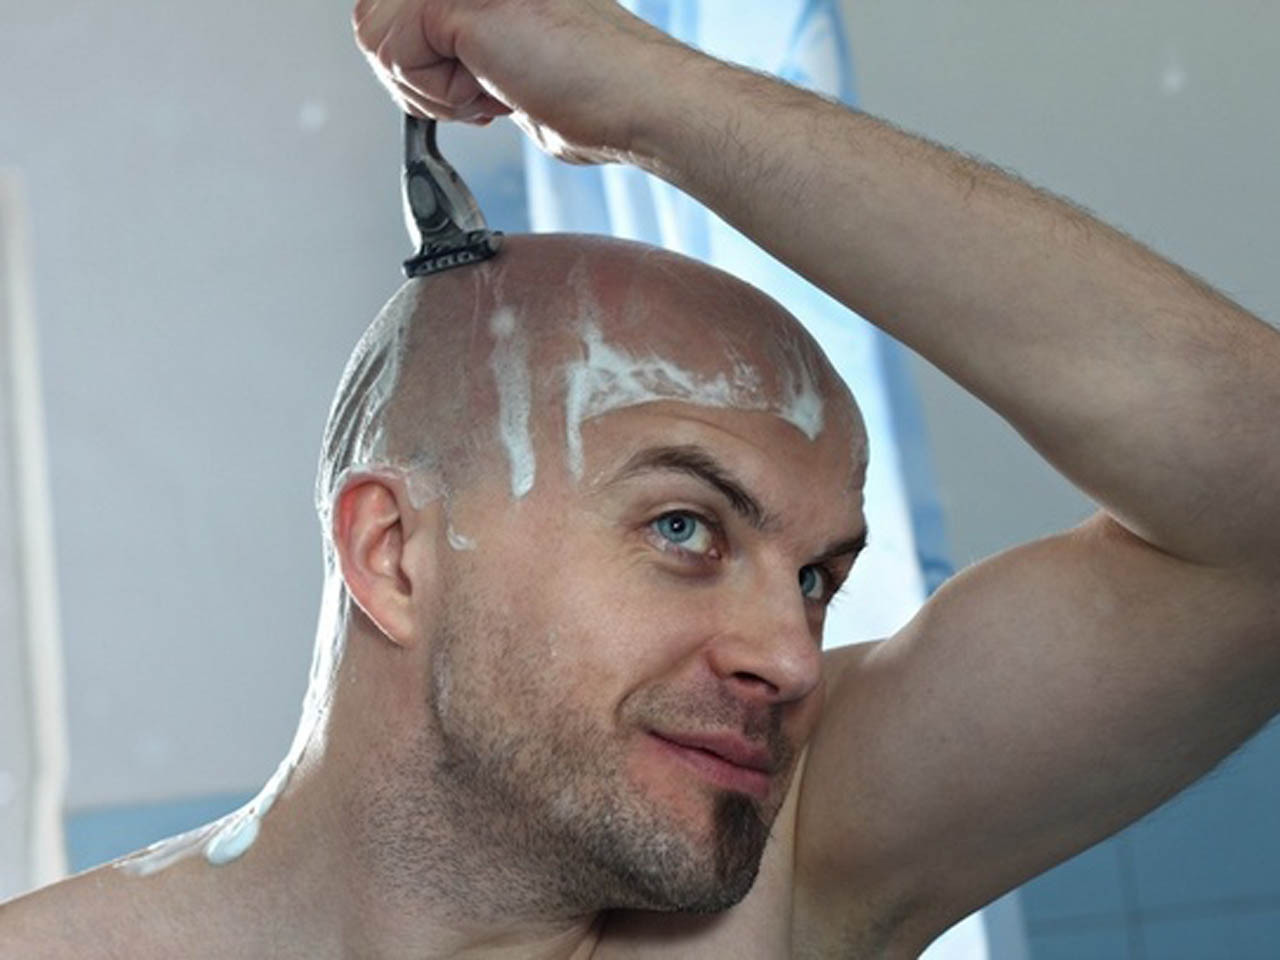 Bald men facial hair